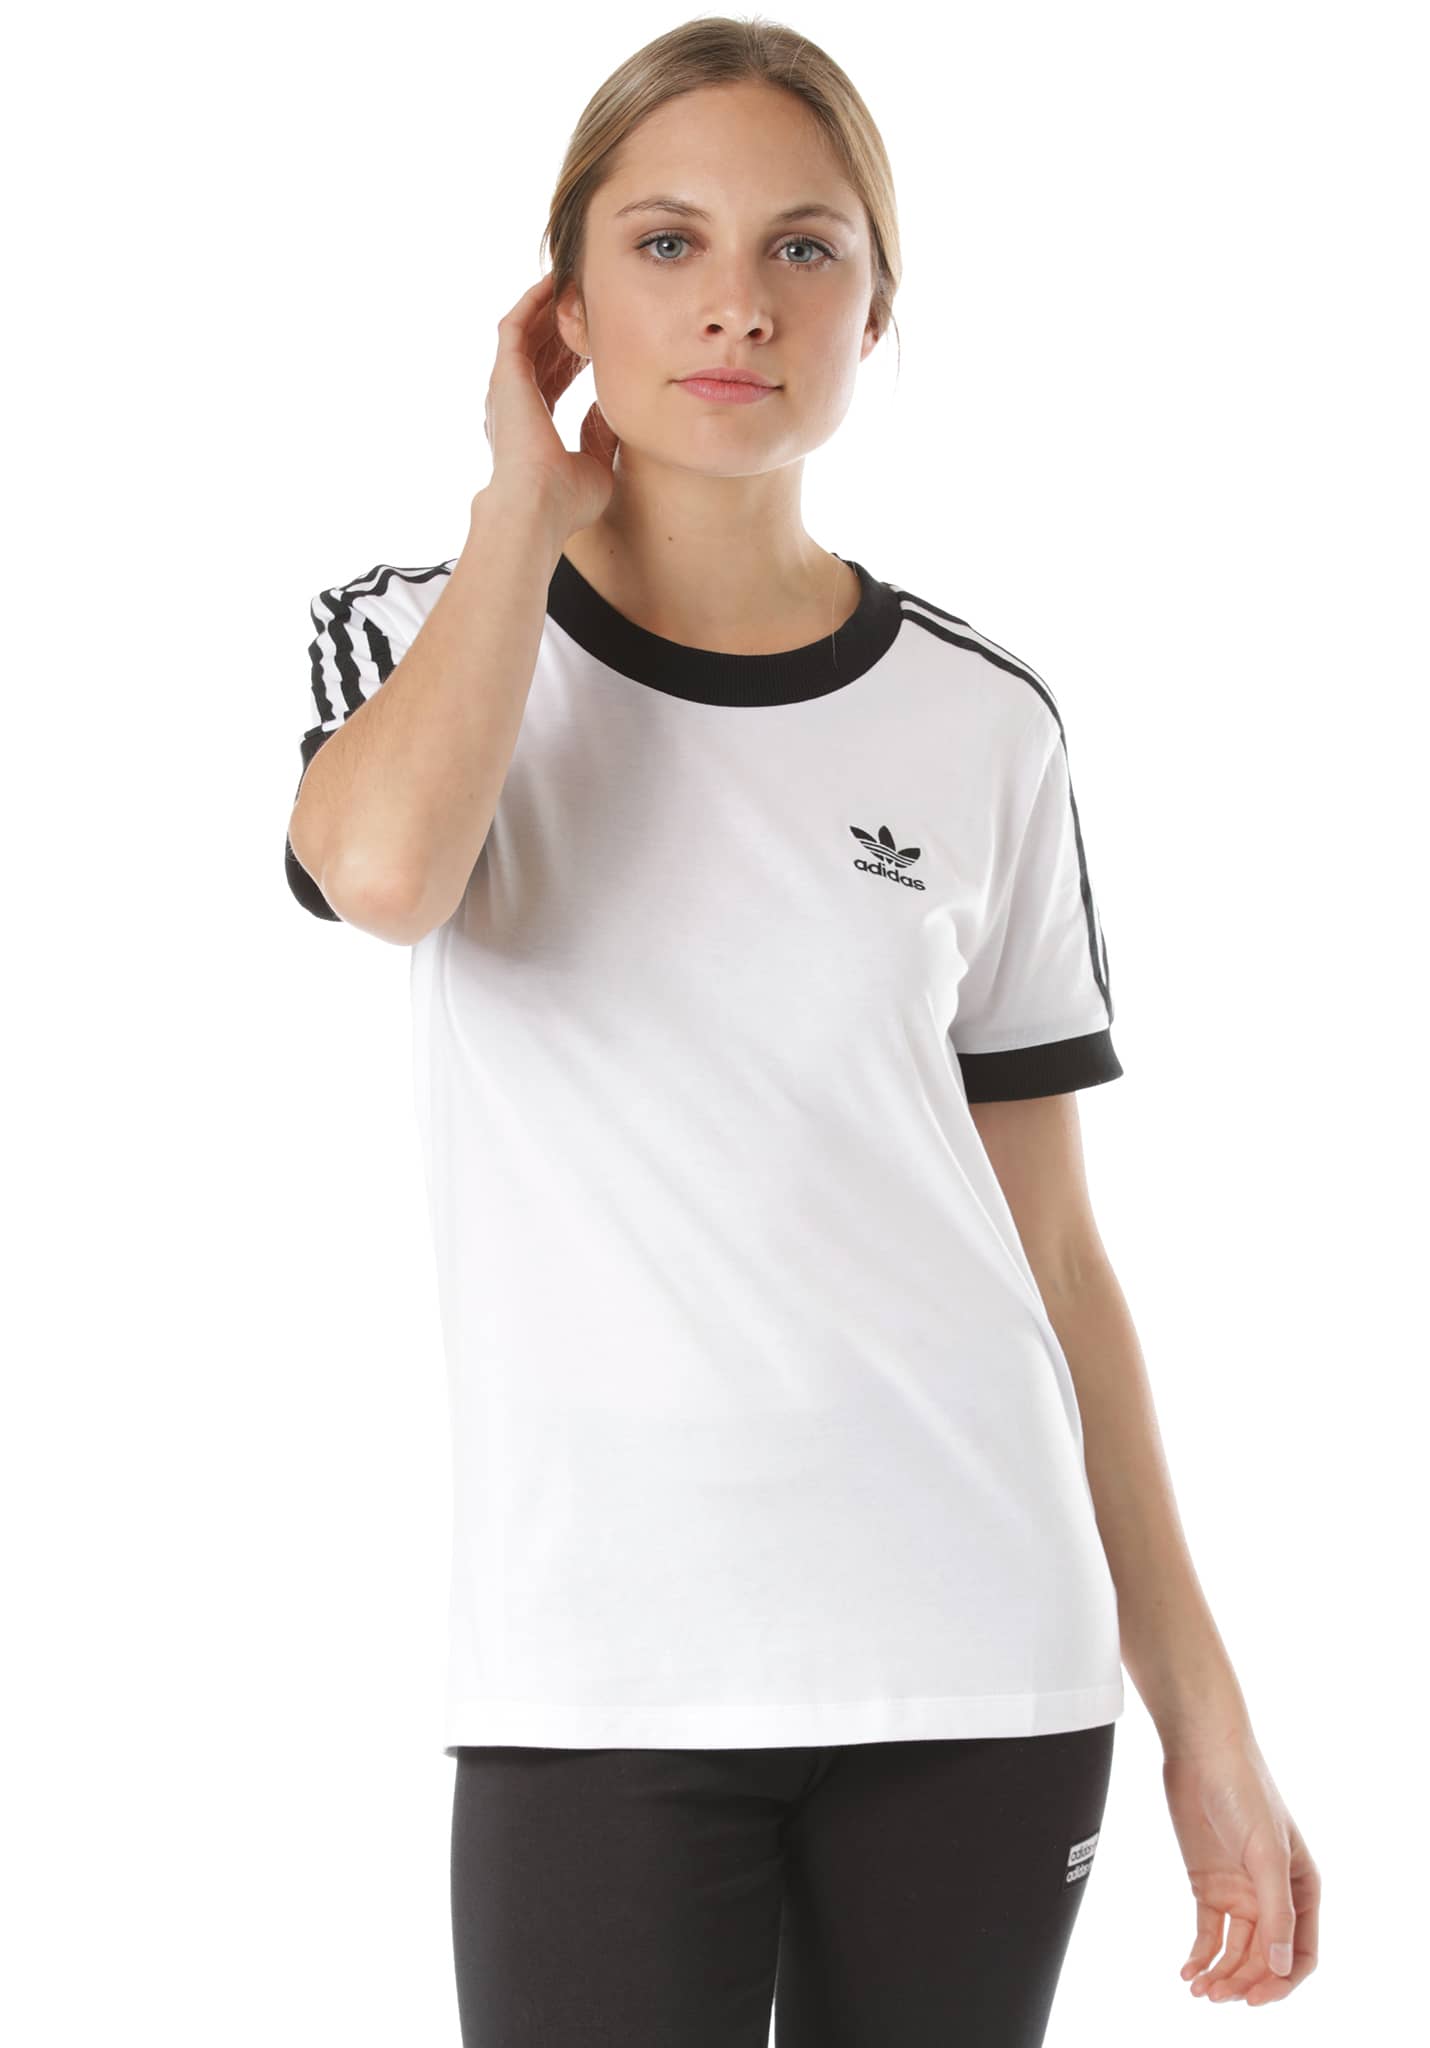 Adidas Originals 3 Stripes T-Shirt white-black 34